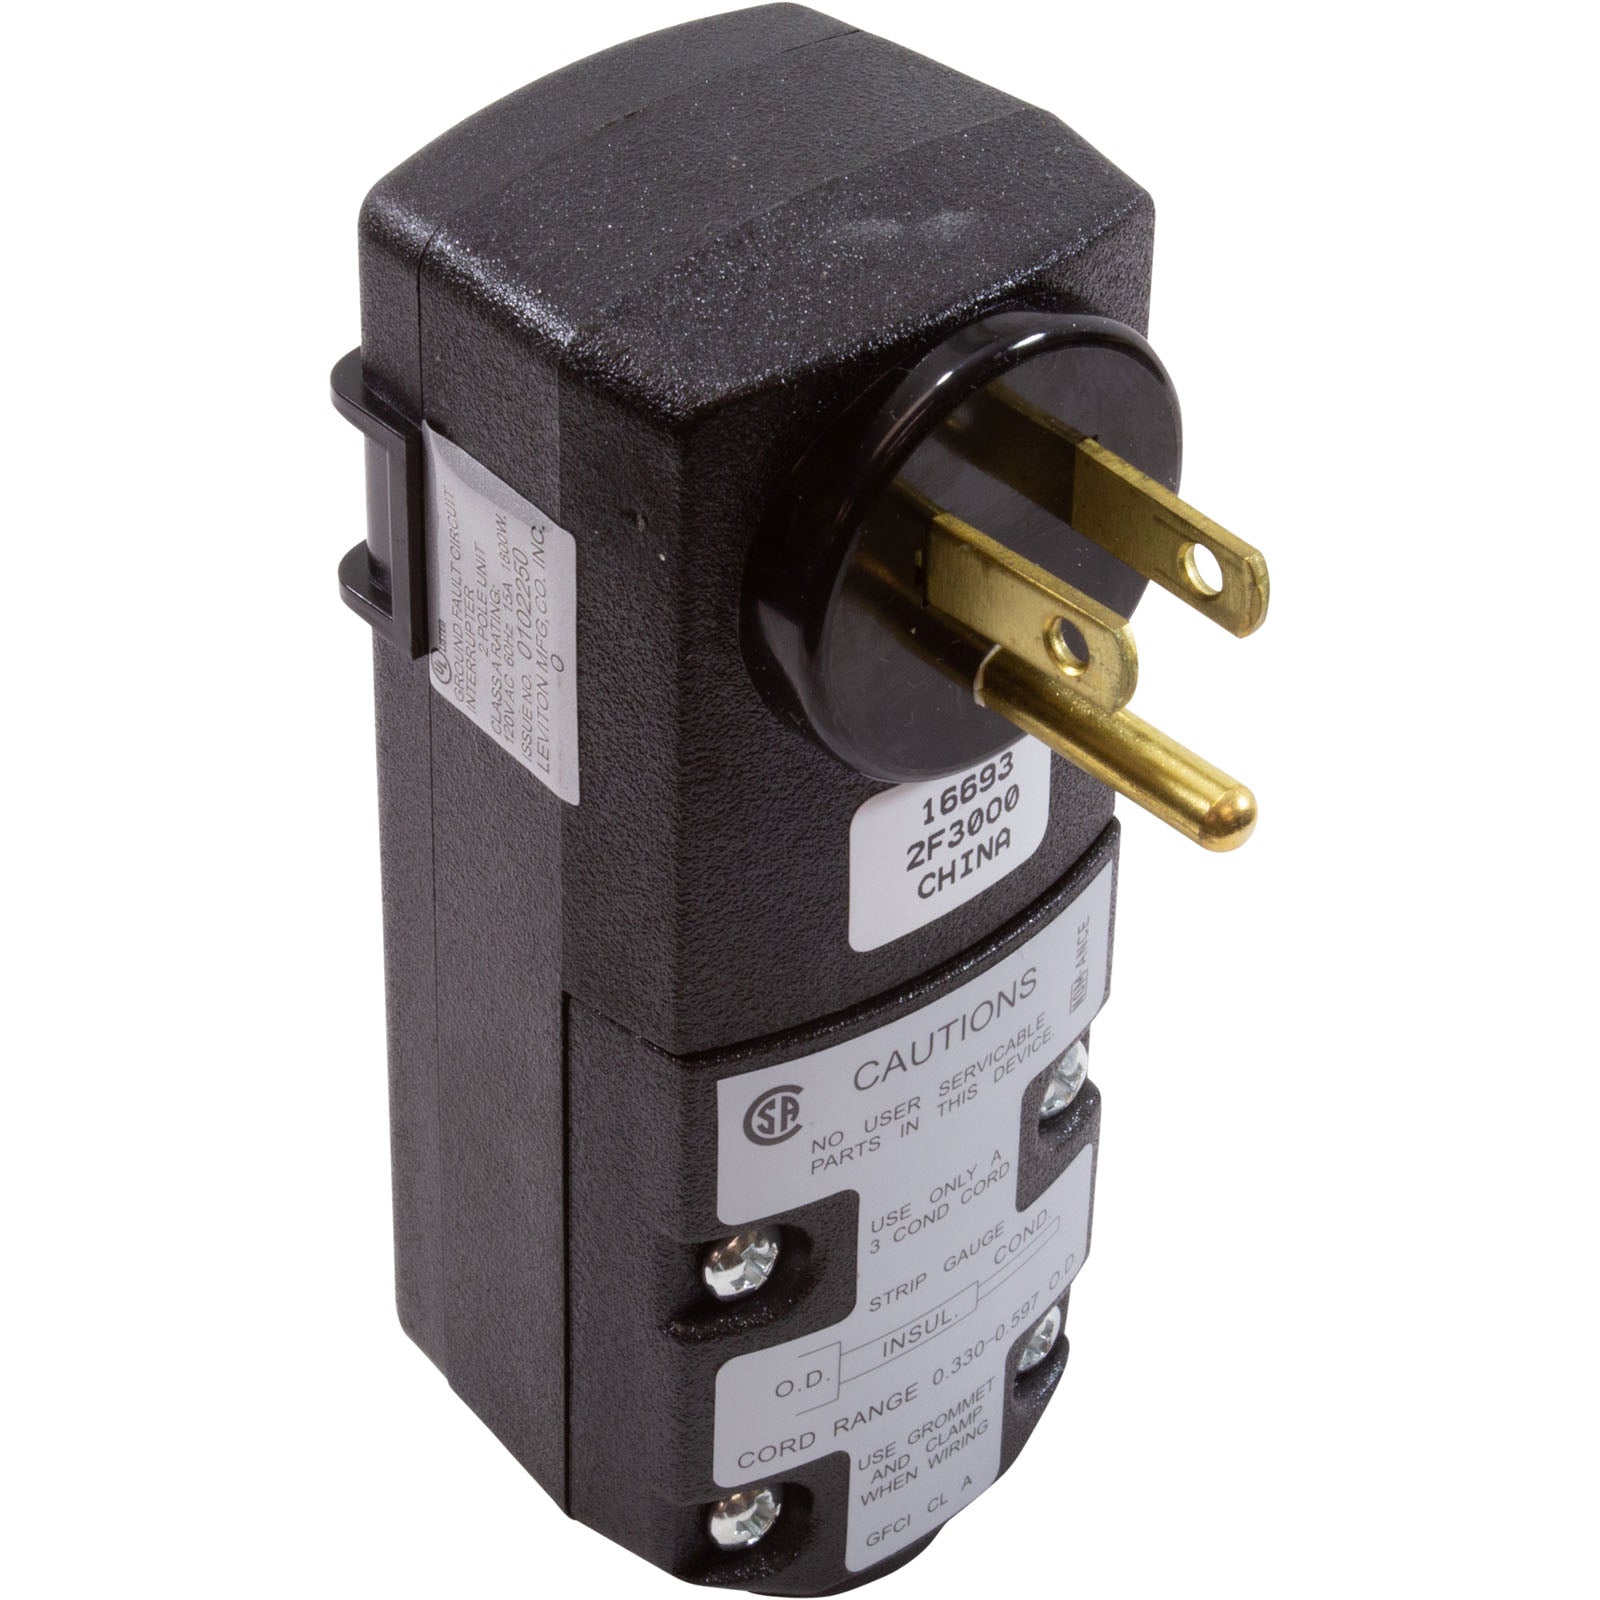 MSPA GFCI Protection Plug (B9301455)